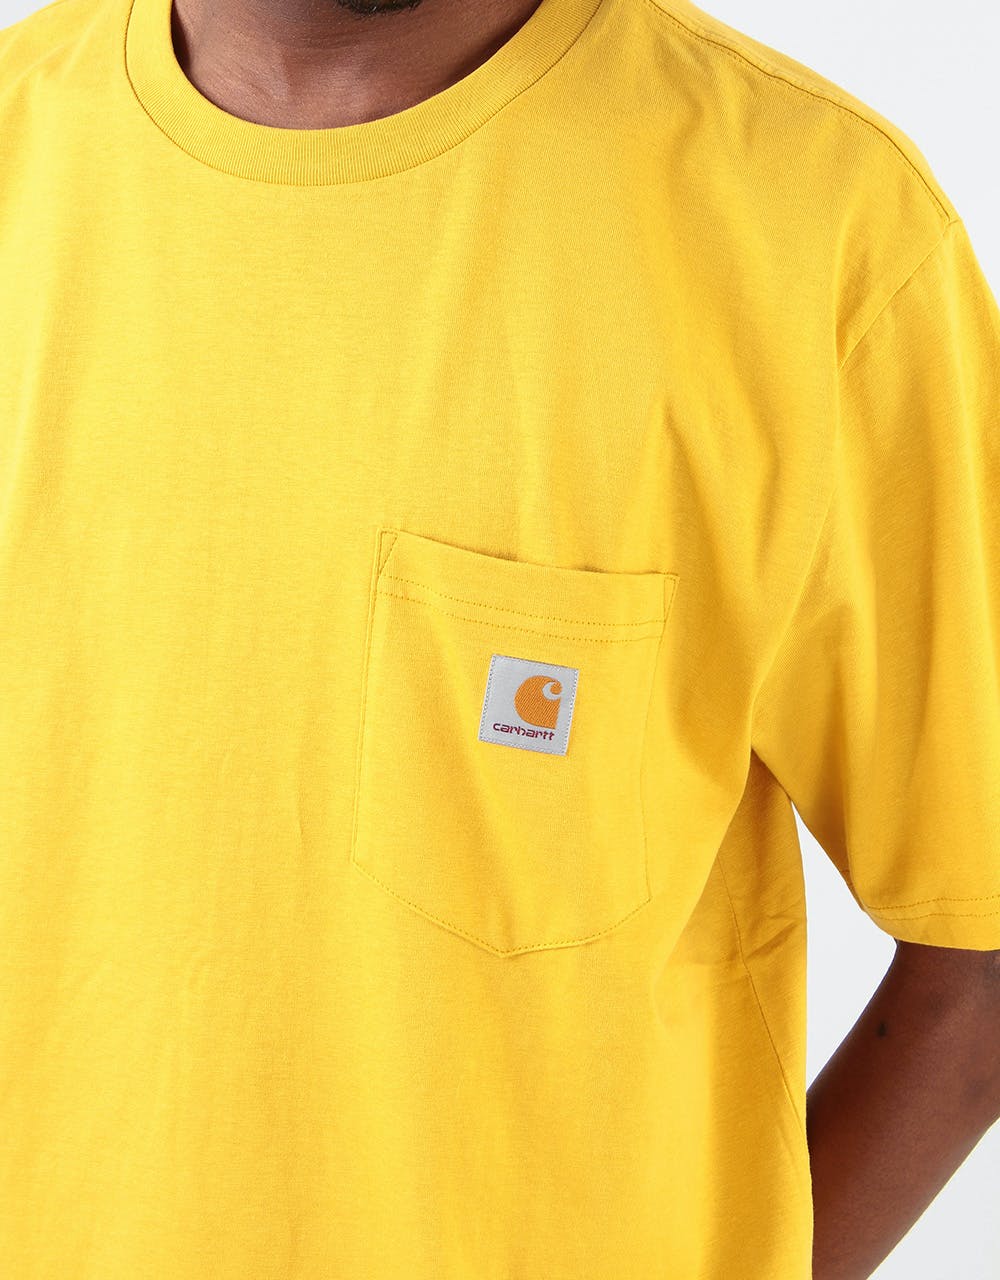 Carhartt WIP S/S Pocket T-Shirt - Colza